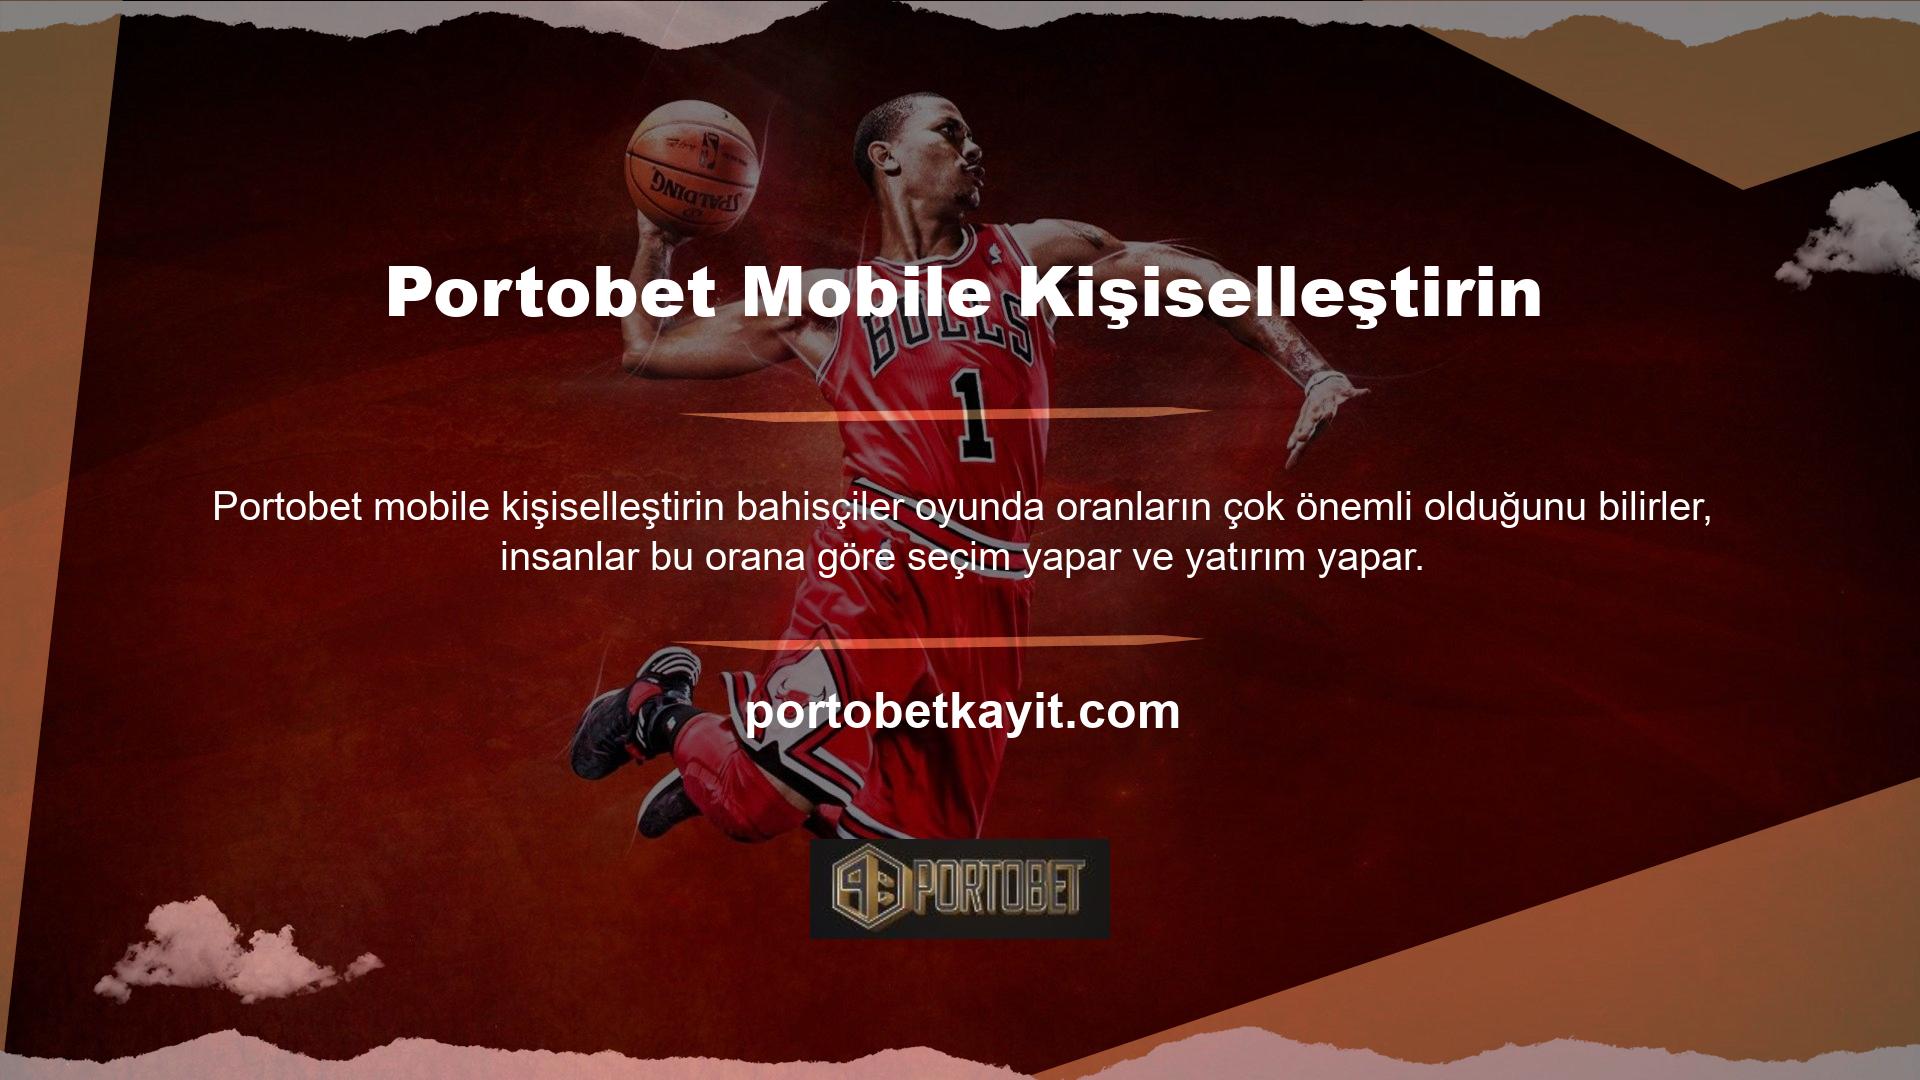 Canlı bahis sitesi Portobet bu konuda Portobet en iyi mobil özelleştirmesini sunmaya çalışmaktadır